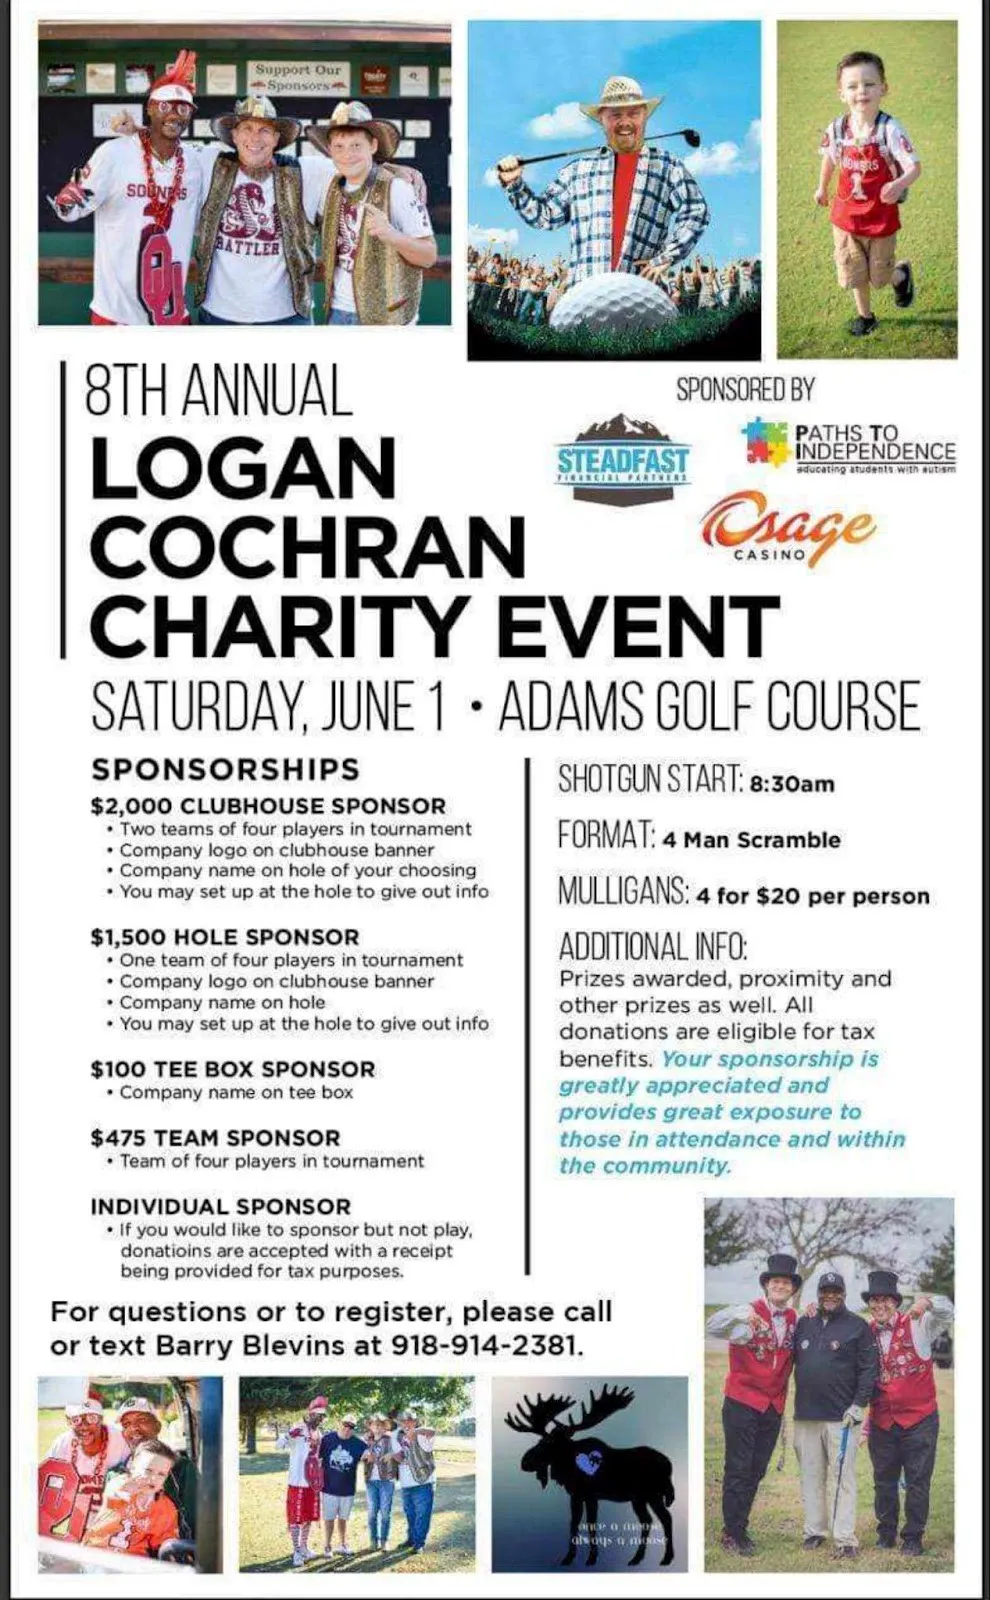 Logan Cochran 8th Annual Charity Event